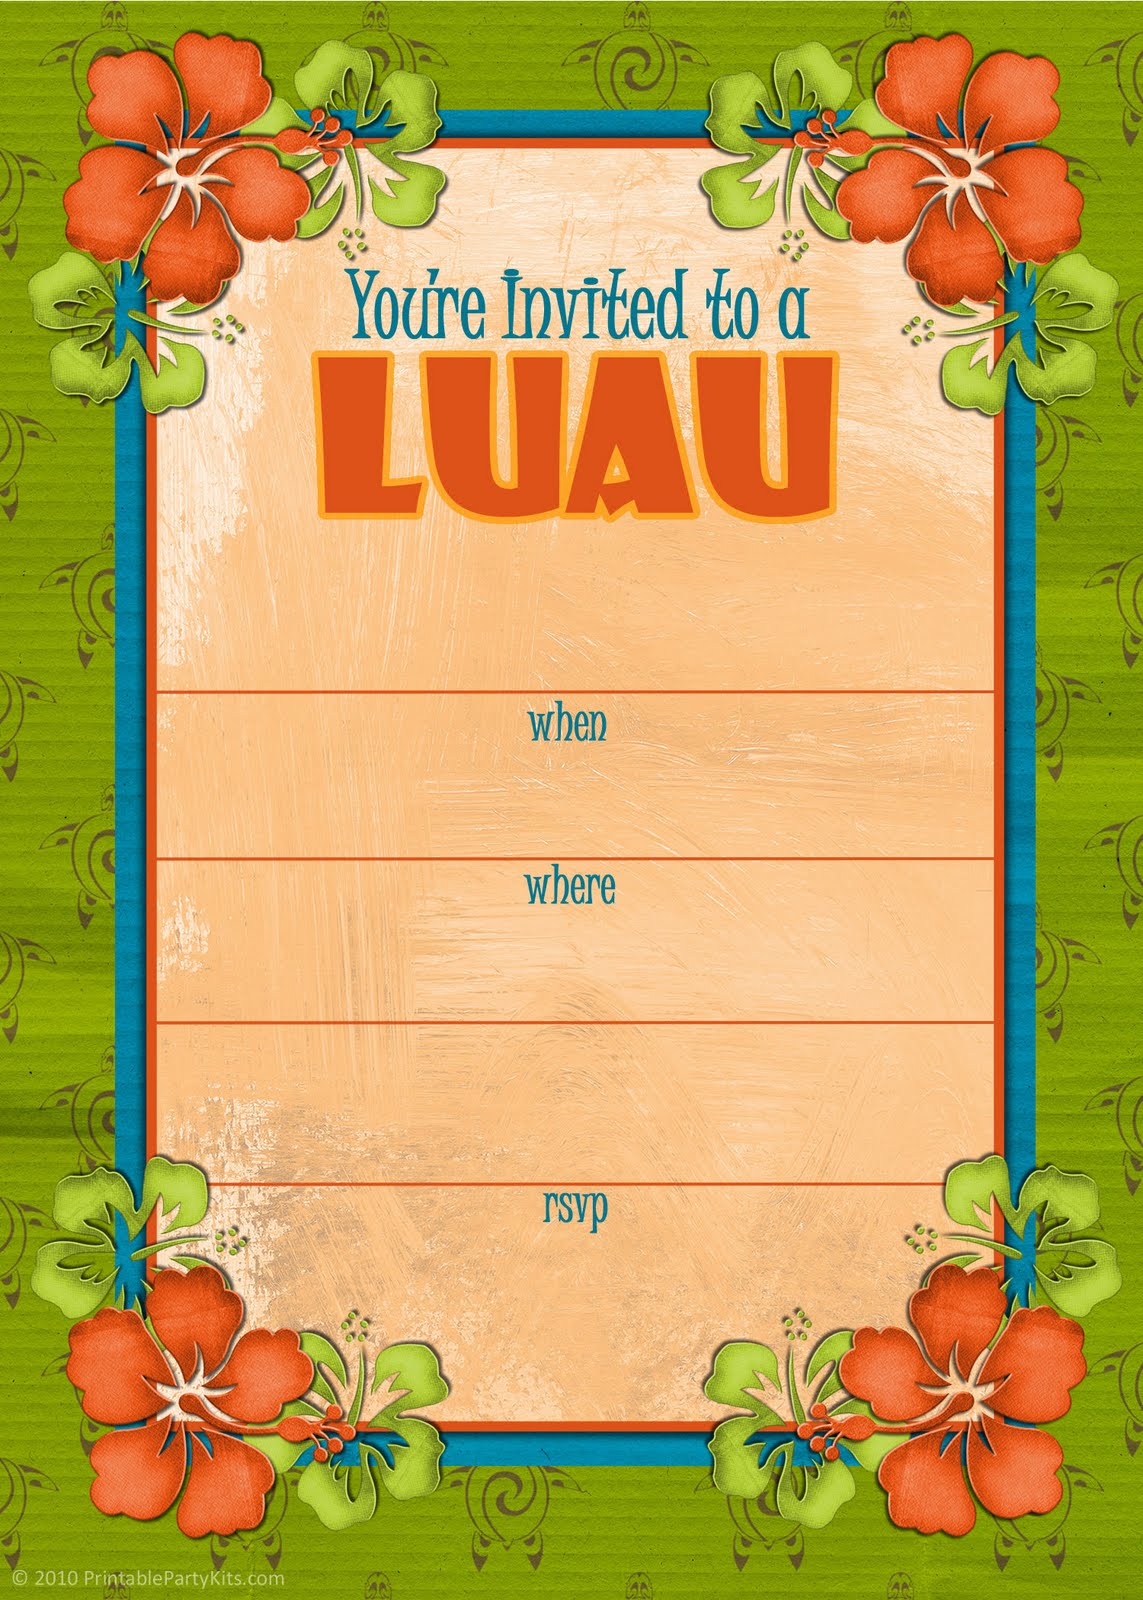 printable-luau-invitations-free-invitation-design-blog